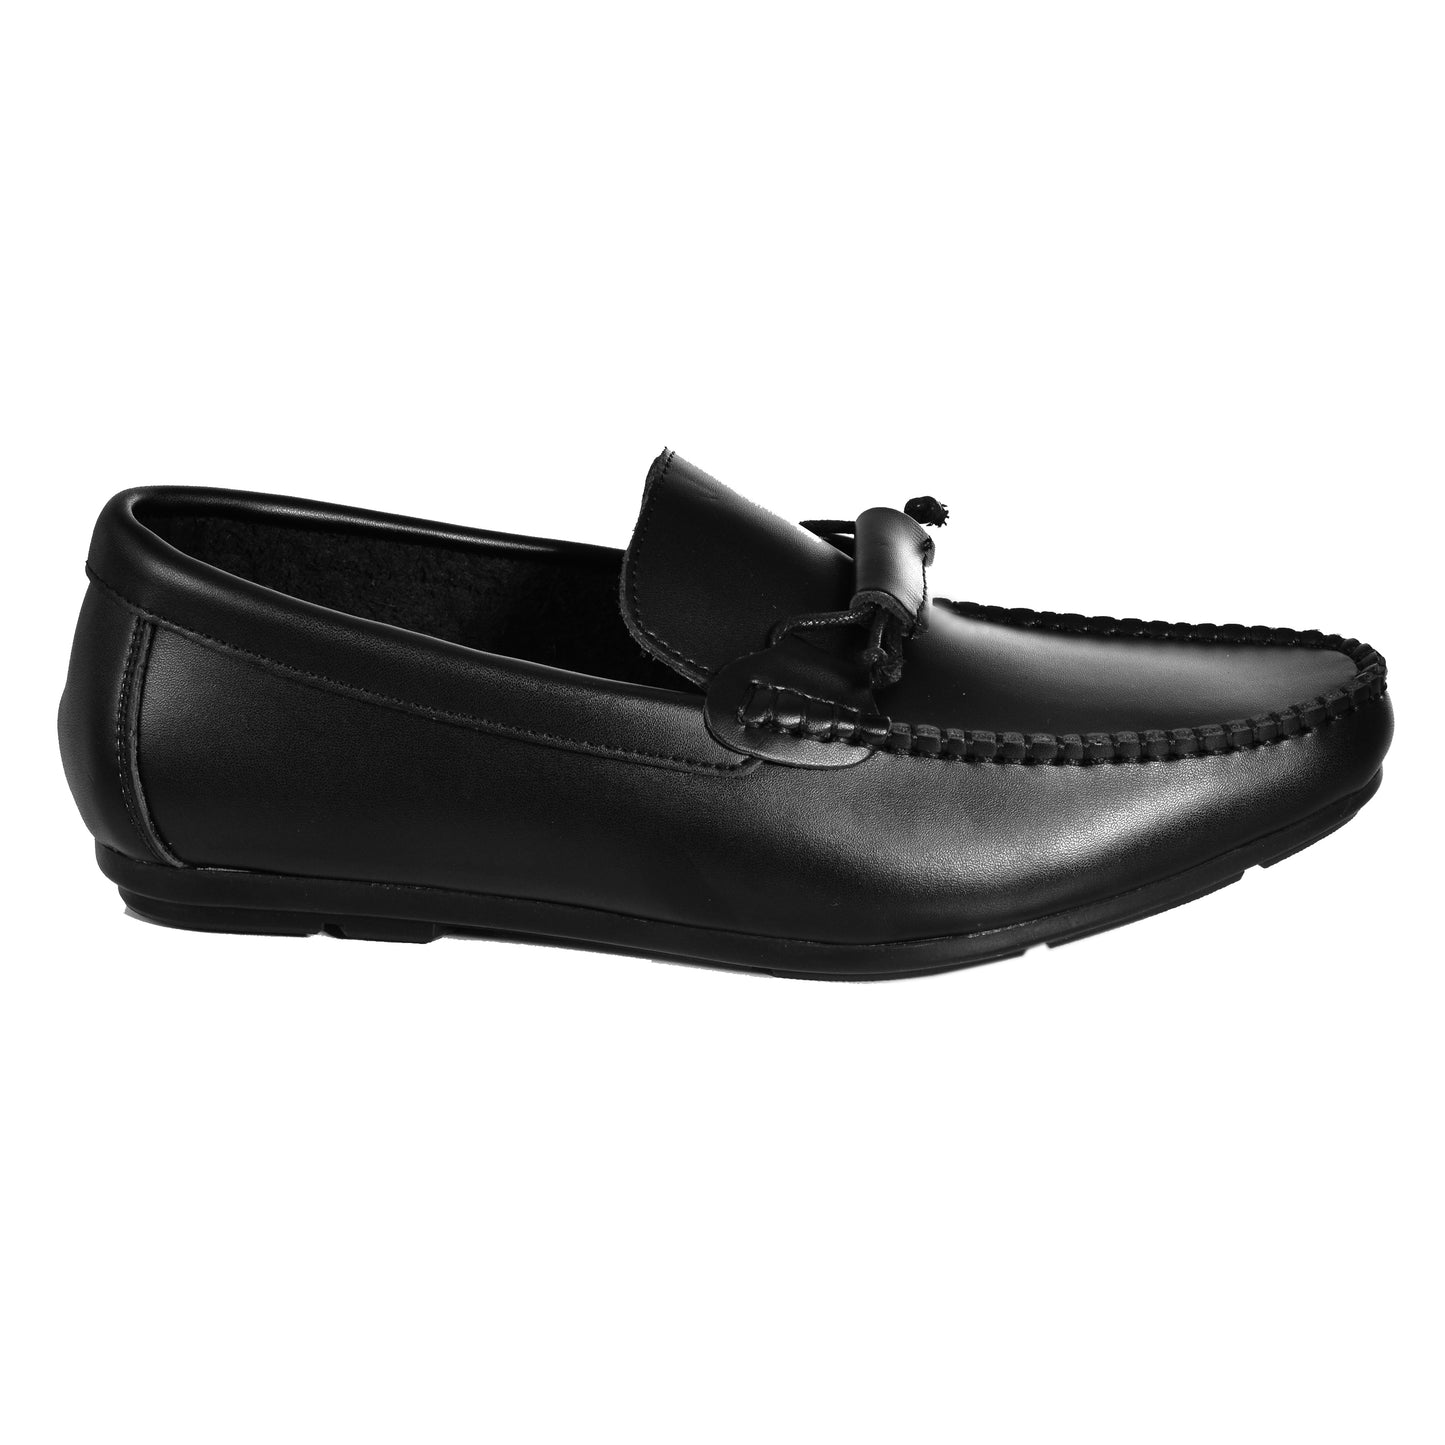 2H #JX21-1 Black Leather Loafer Moccasin